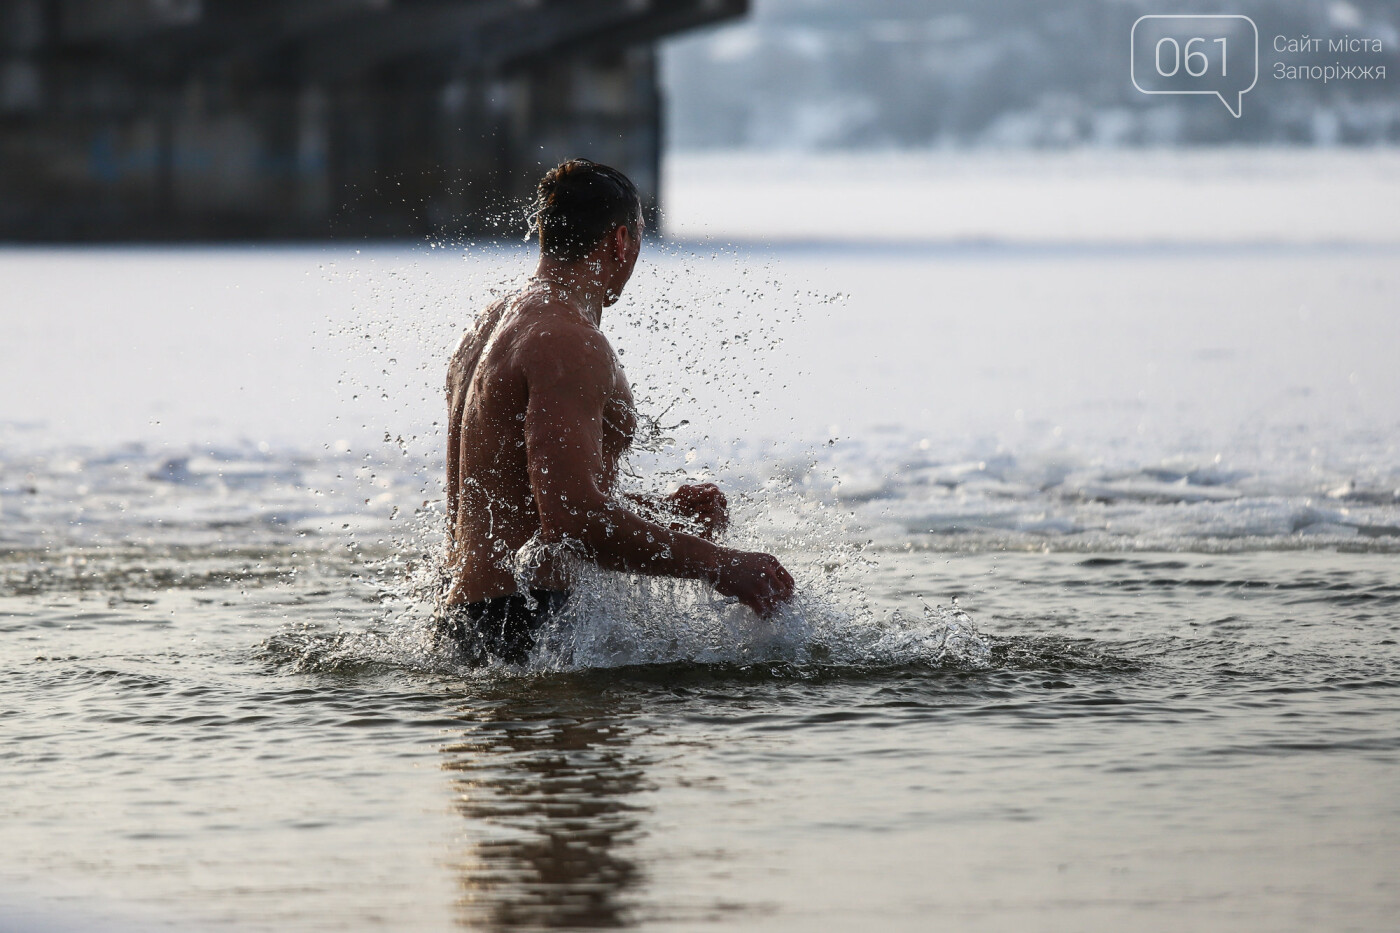 Купание в замерзшем Днепре и освящение воды в храмах: как в Запорожье празднуют Крещение, - ФОТОРЕПОРТАЖ, фото-39